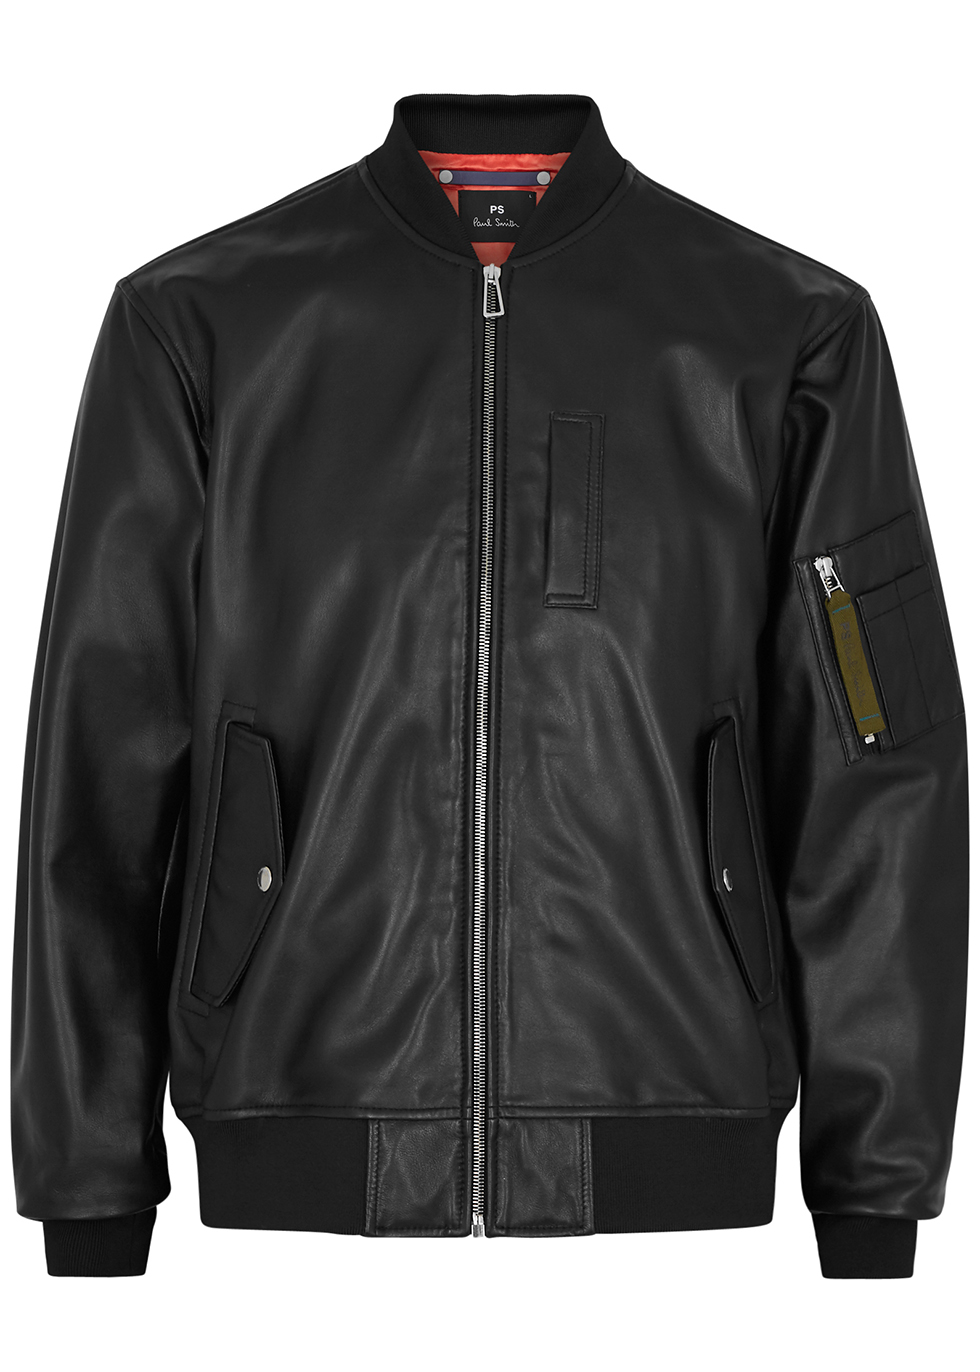 Paul Smith Black leather bomber jacket - Harvey Nichols